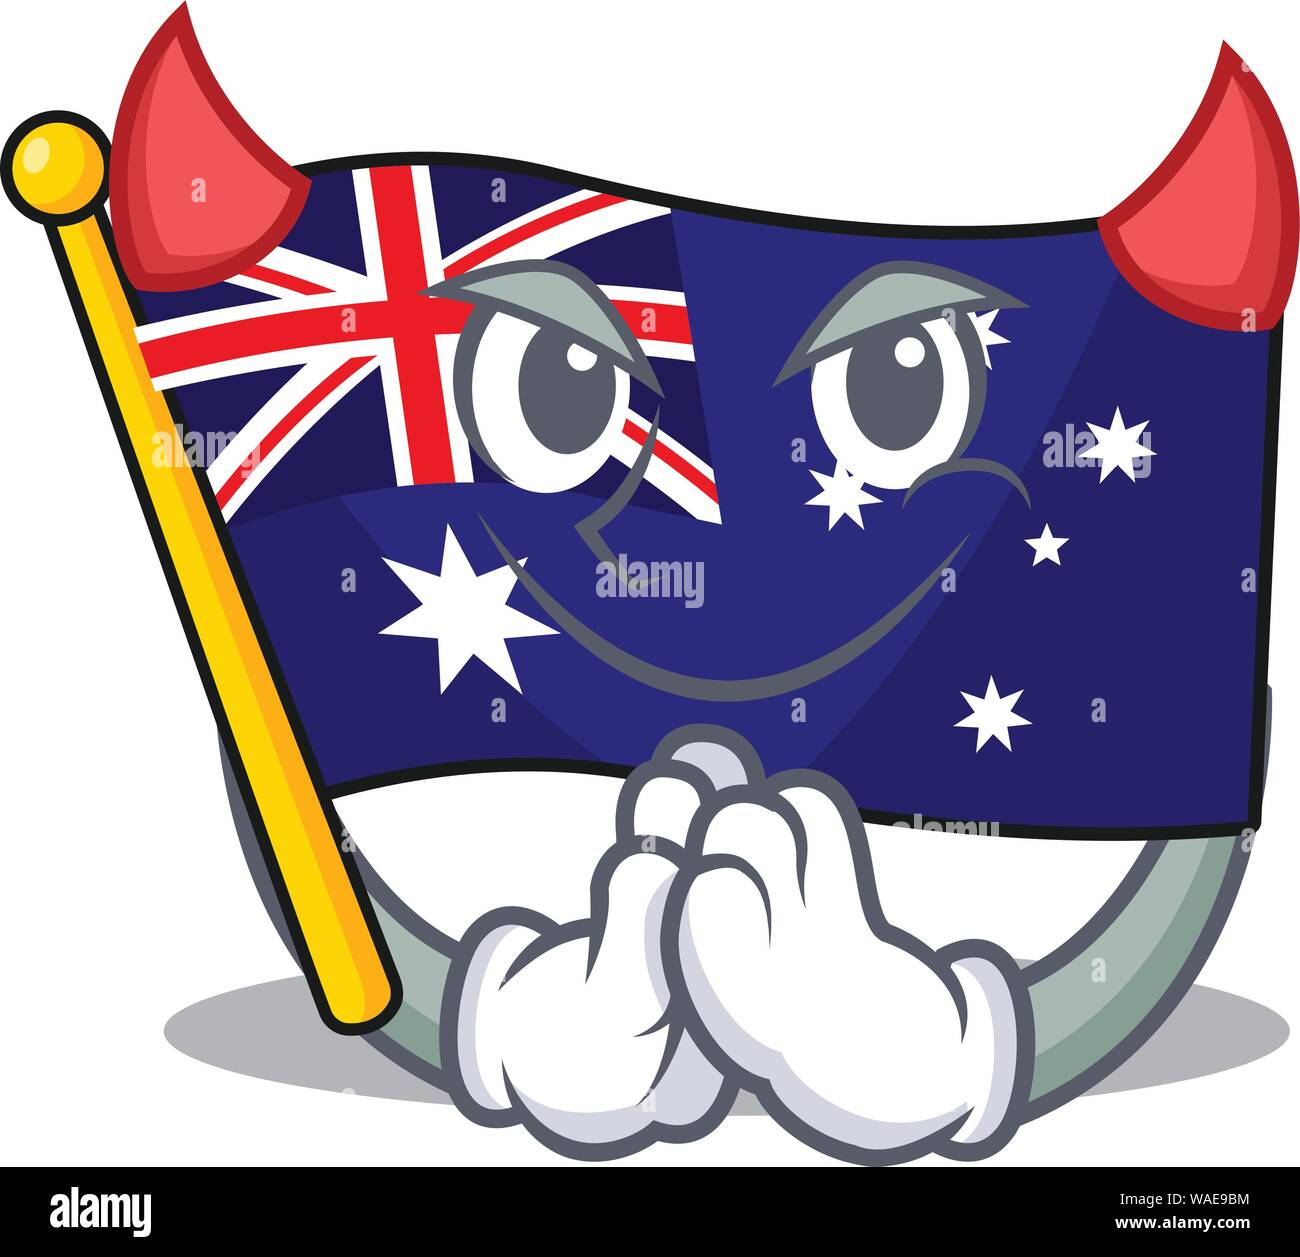 Devil flag australia in the character shape Stock Vector